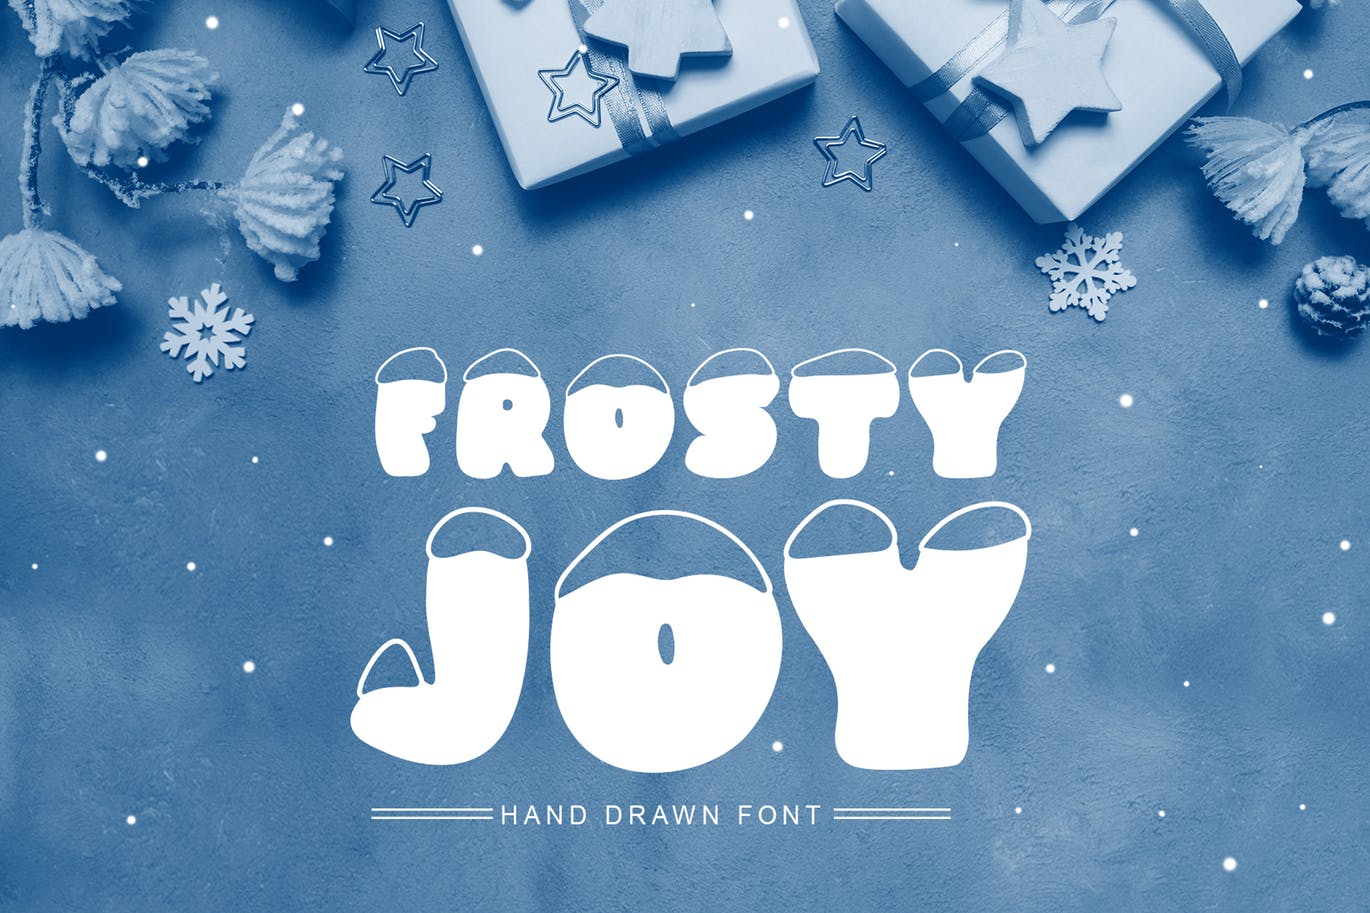 斯堪的纳维亚风格可爱积雪字体素材天下精选 Frosty Joy Hand Drawn Display Font插图